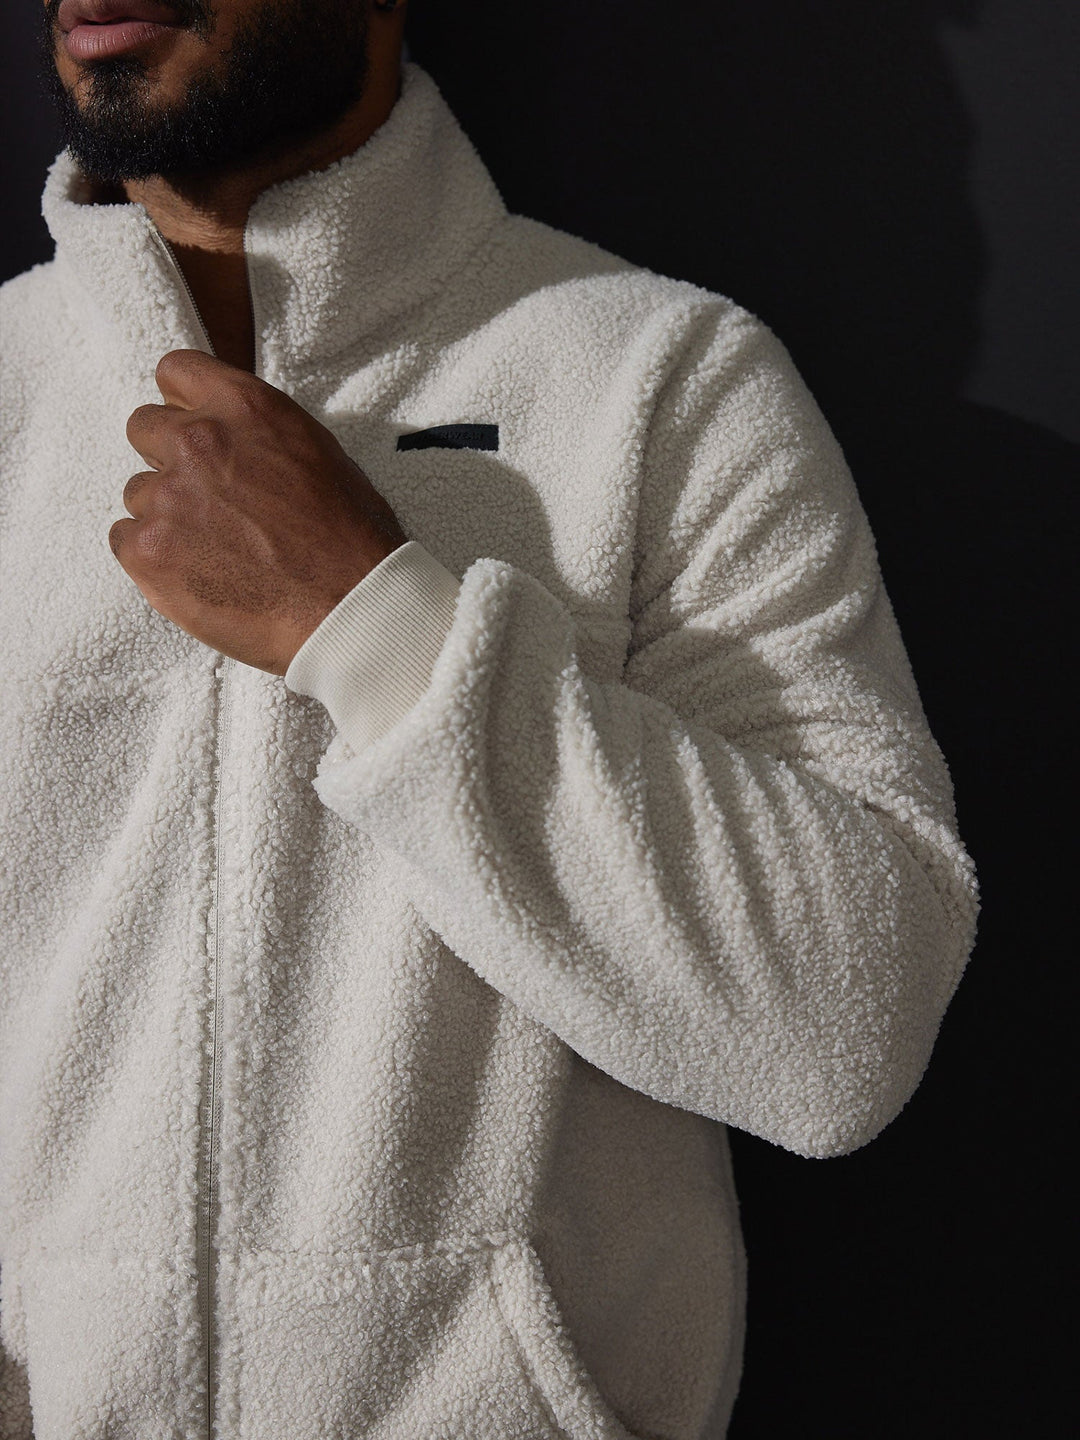 Flex Polar Fleece Jacket - Chalk Clothing Ryderwear 